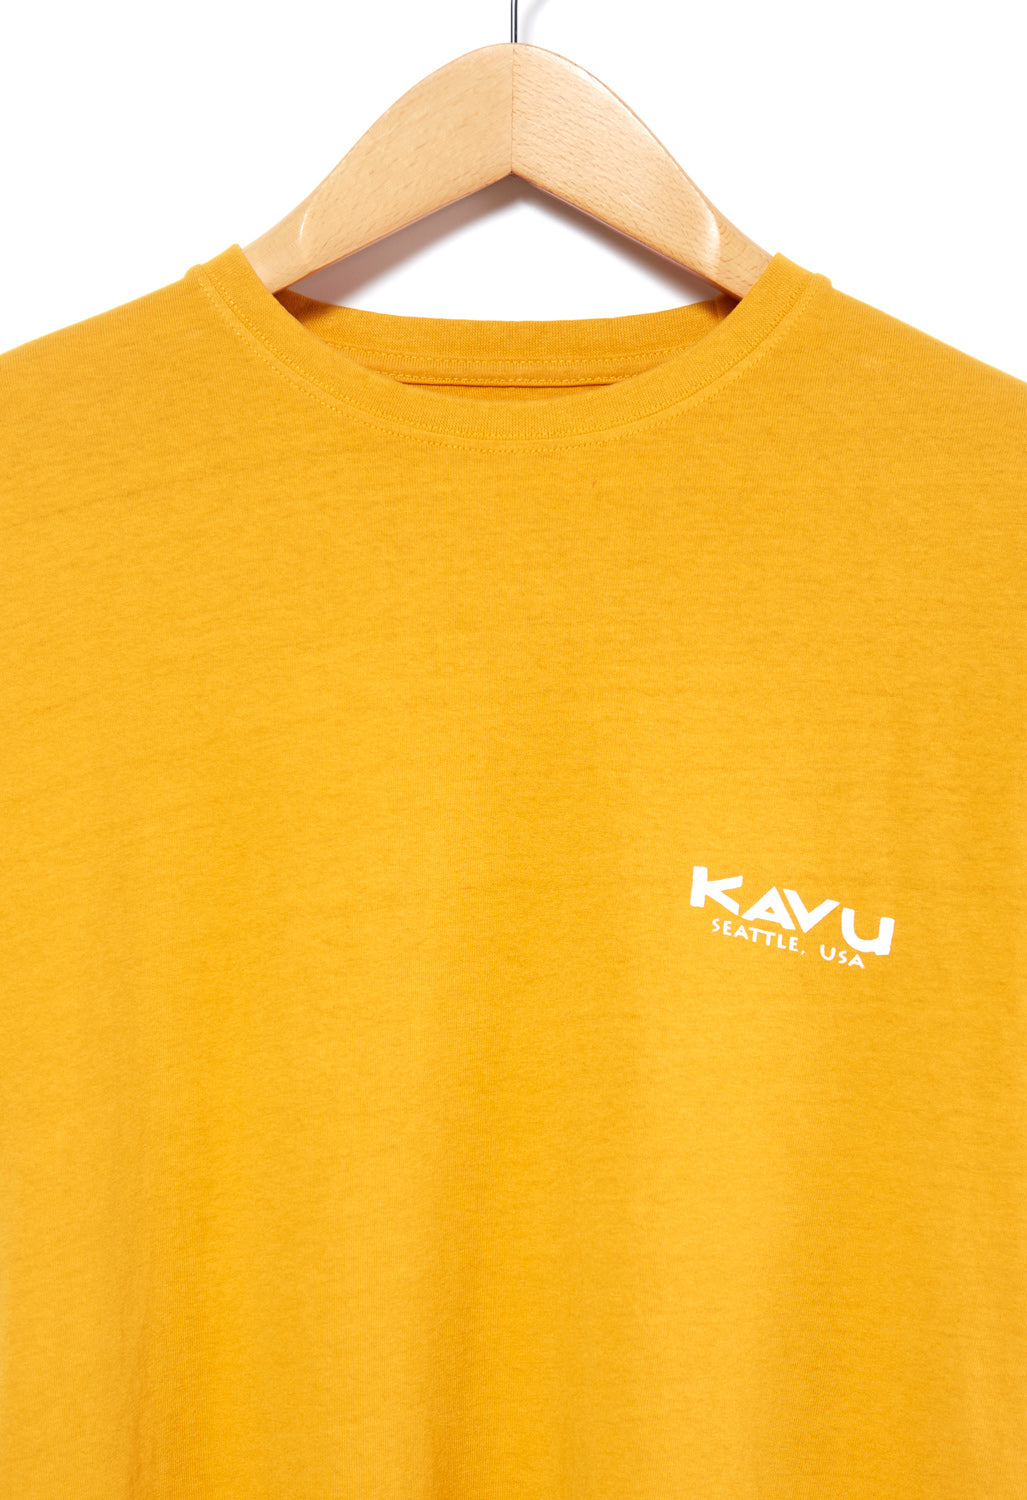 KAVU Busy Livin' T-Shirt - Golden Yellow